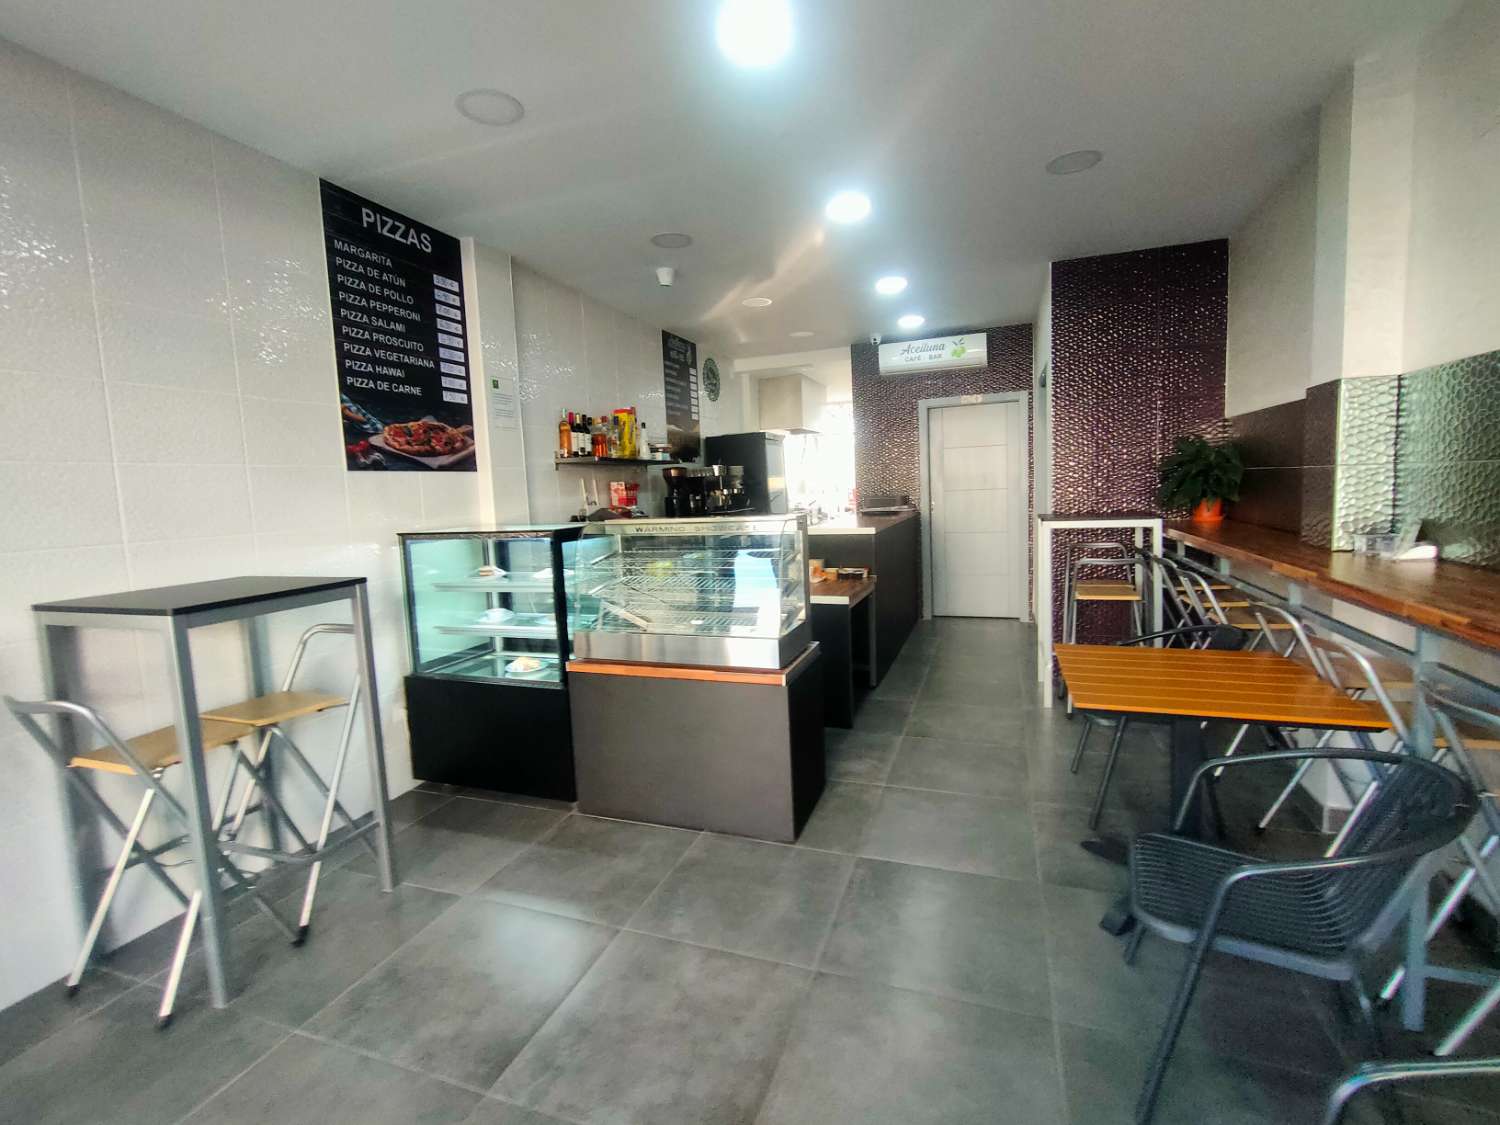 Bar en Venta en Benalmadena Costa - Incluye vivienda 48 m2 - Venta local comercial